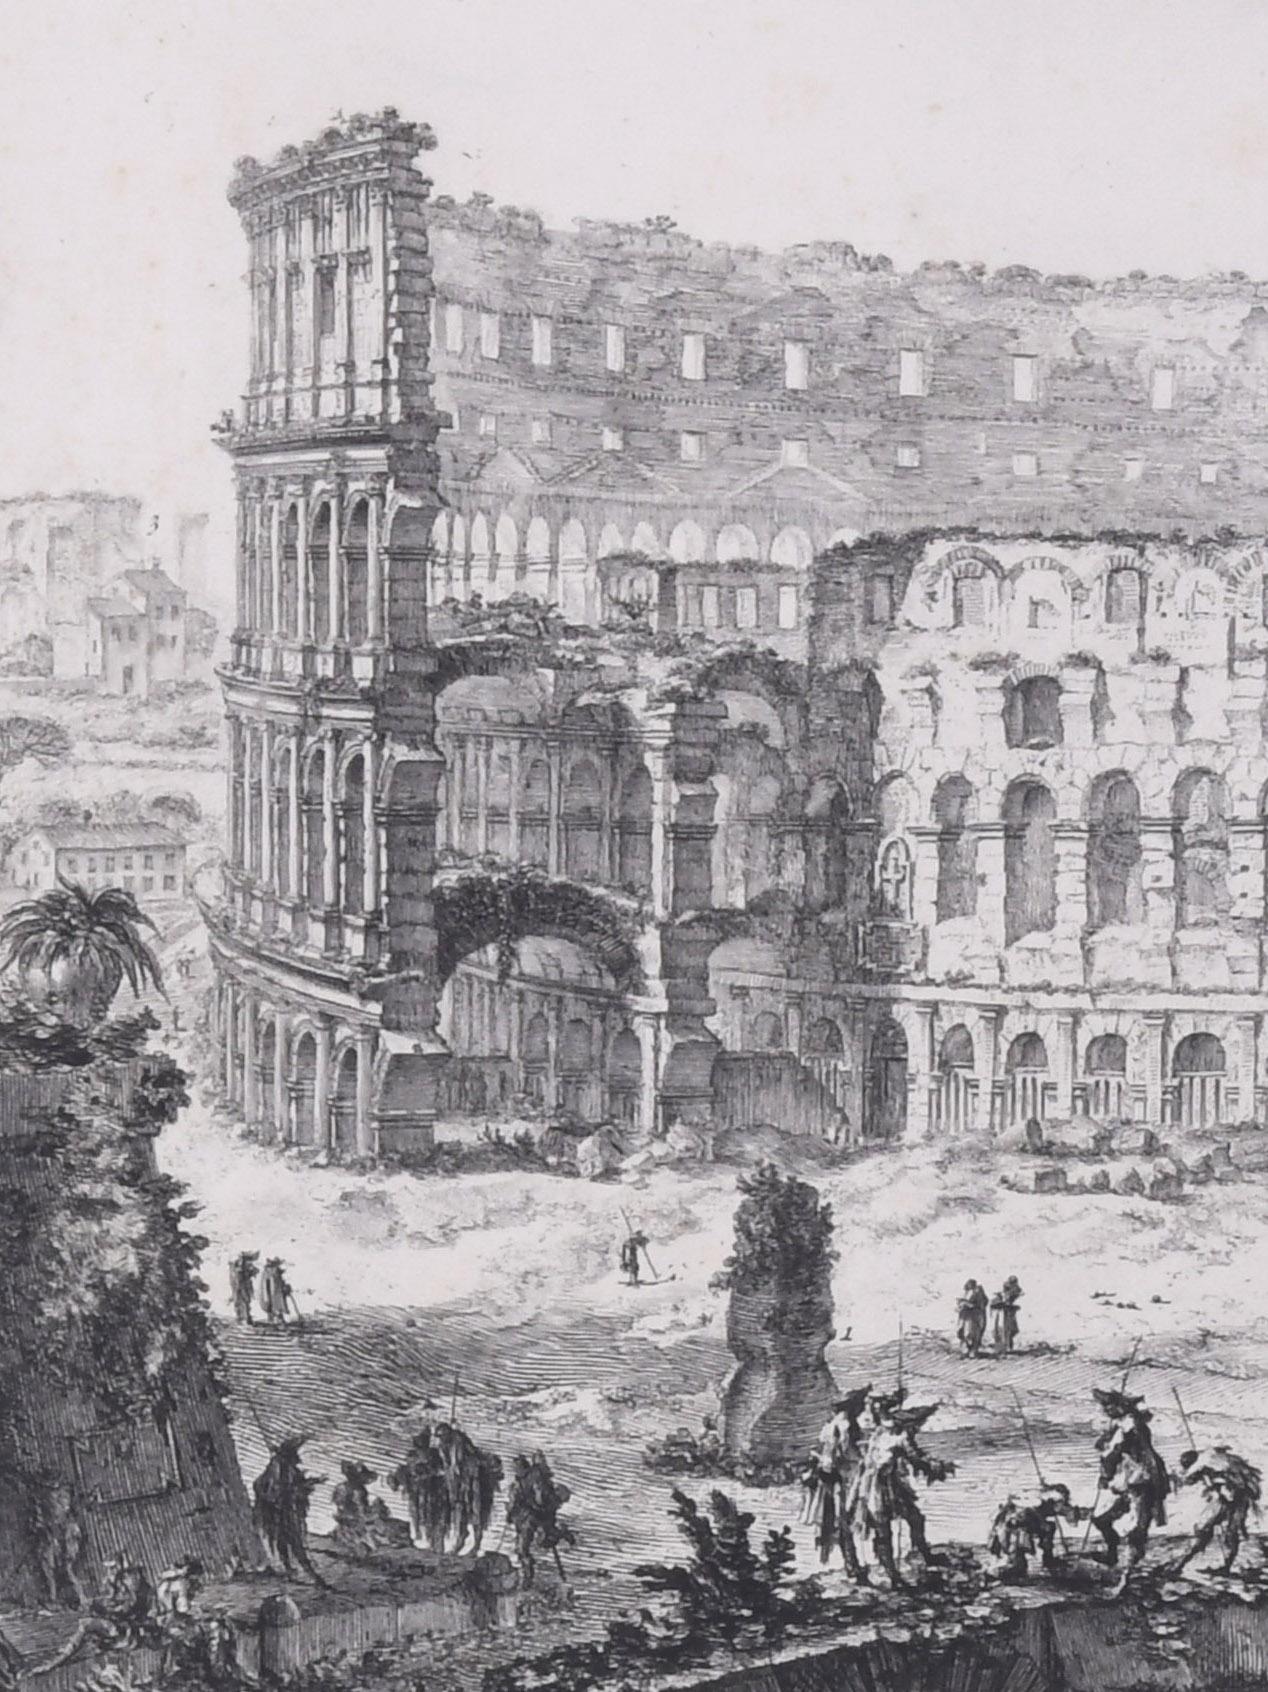 L'Arche de Constantin et le Colosseum
Vedute dell' Arco di Costantino, e dell' Anfiteatro Flavio il Colosseo
De : 